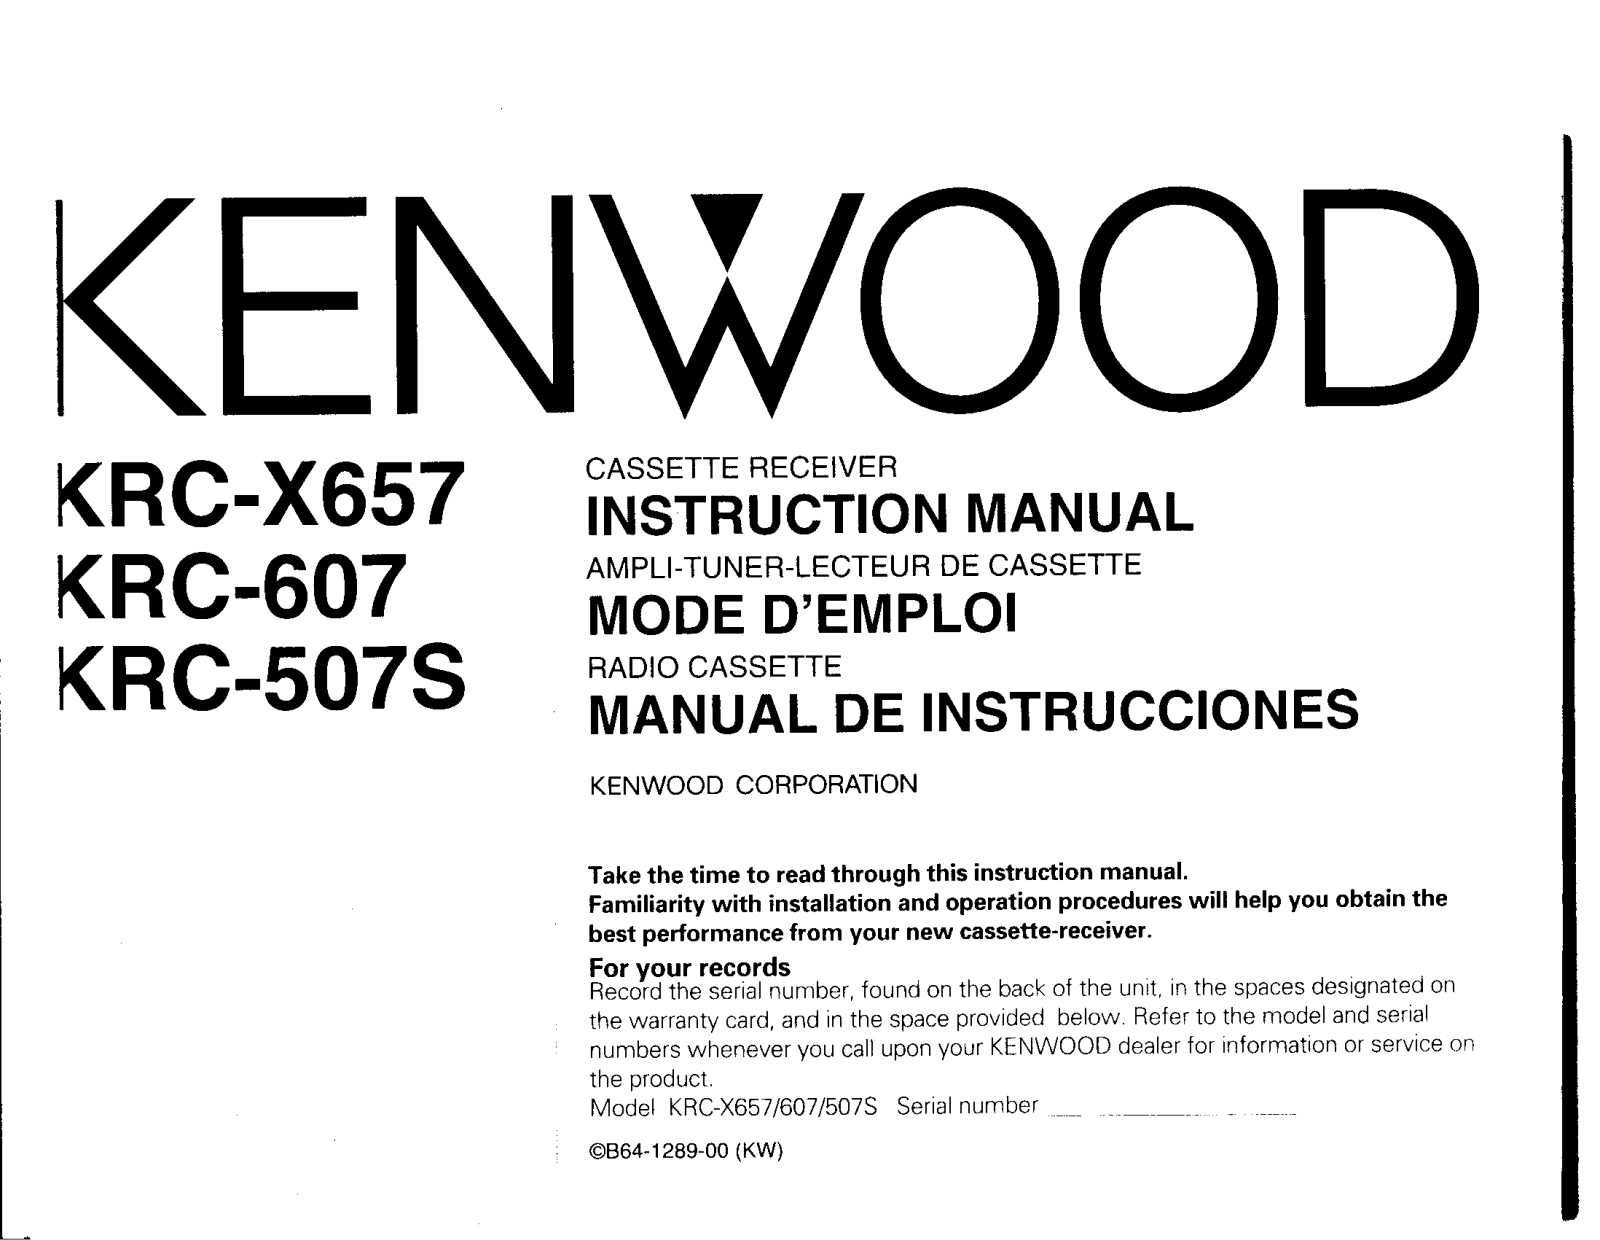 Kenwood KRC-X657, KRC-507S, KRC-607 Owner's Manual